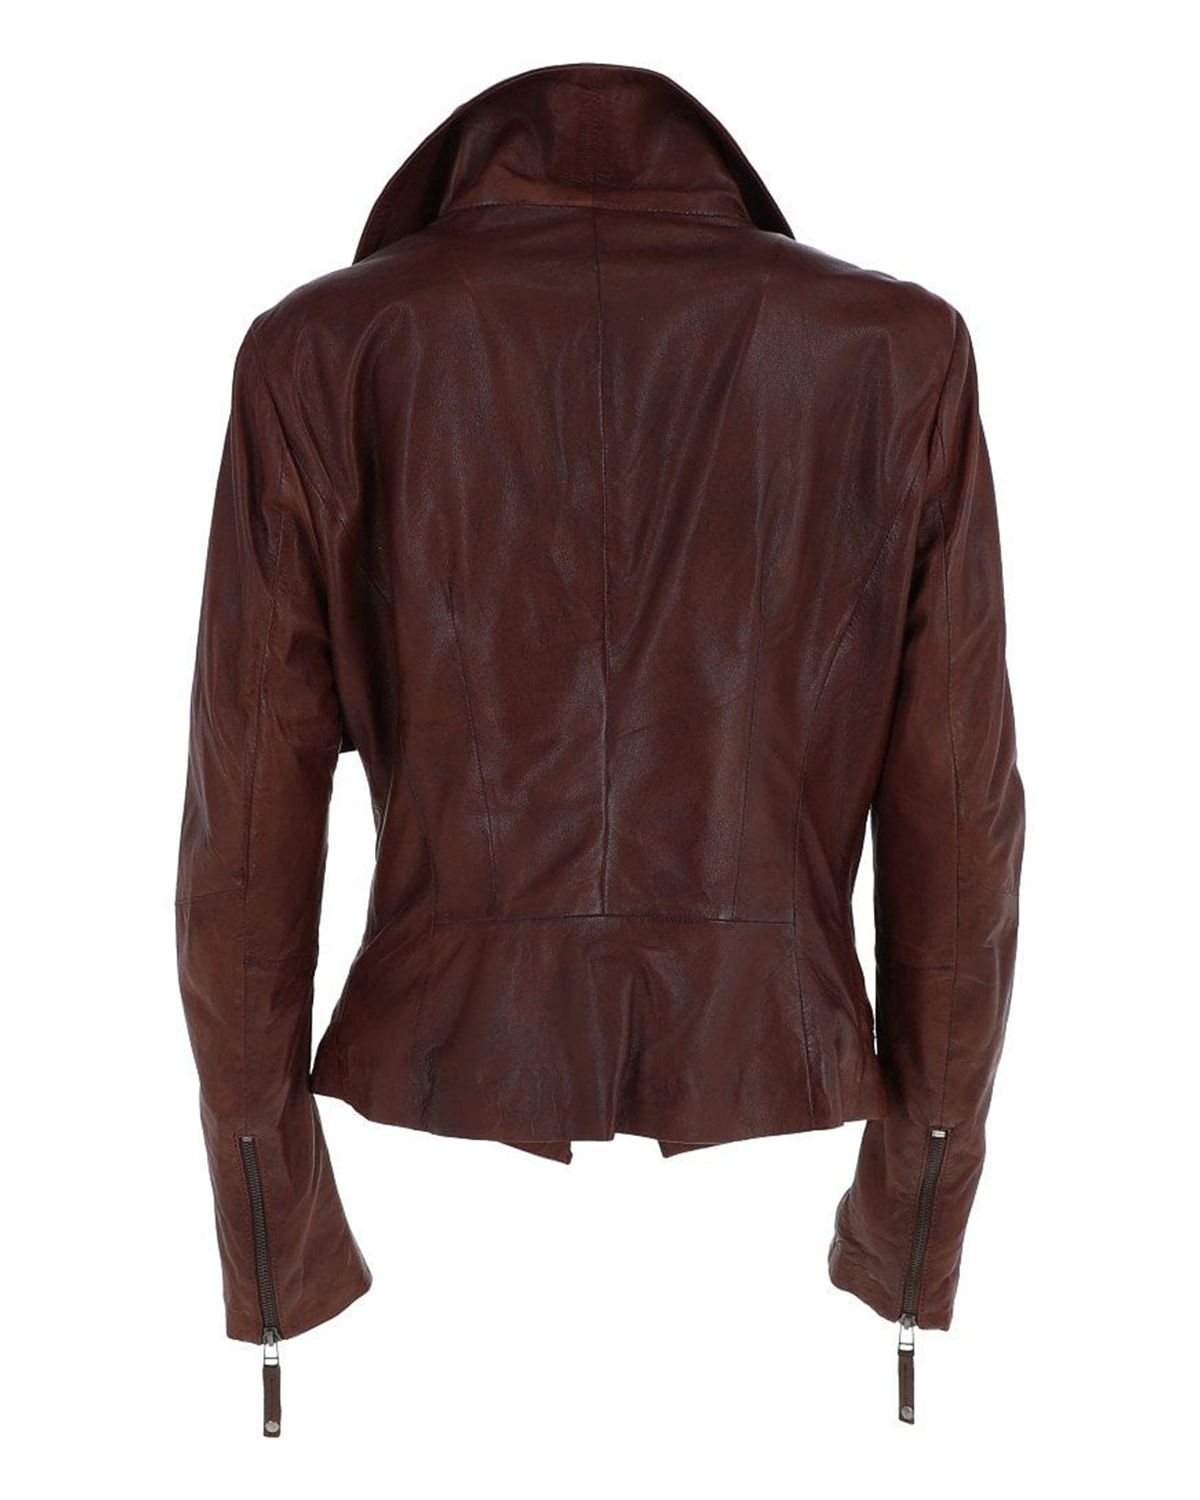 Women's Oxblood Biker Leather Jacket